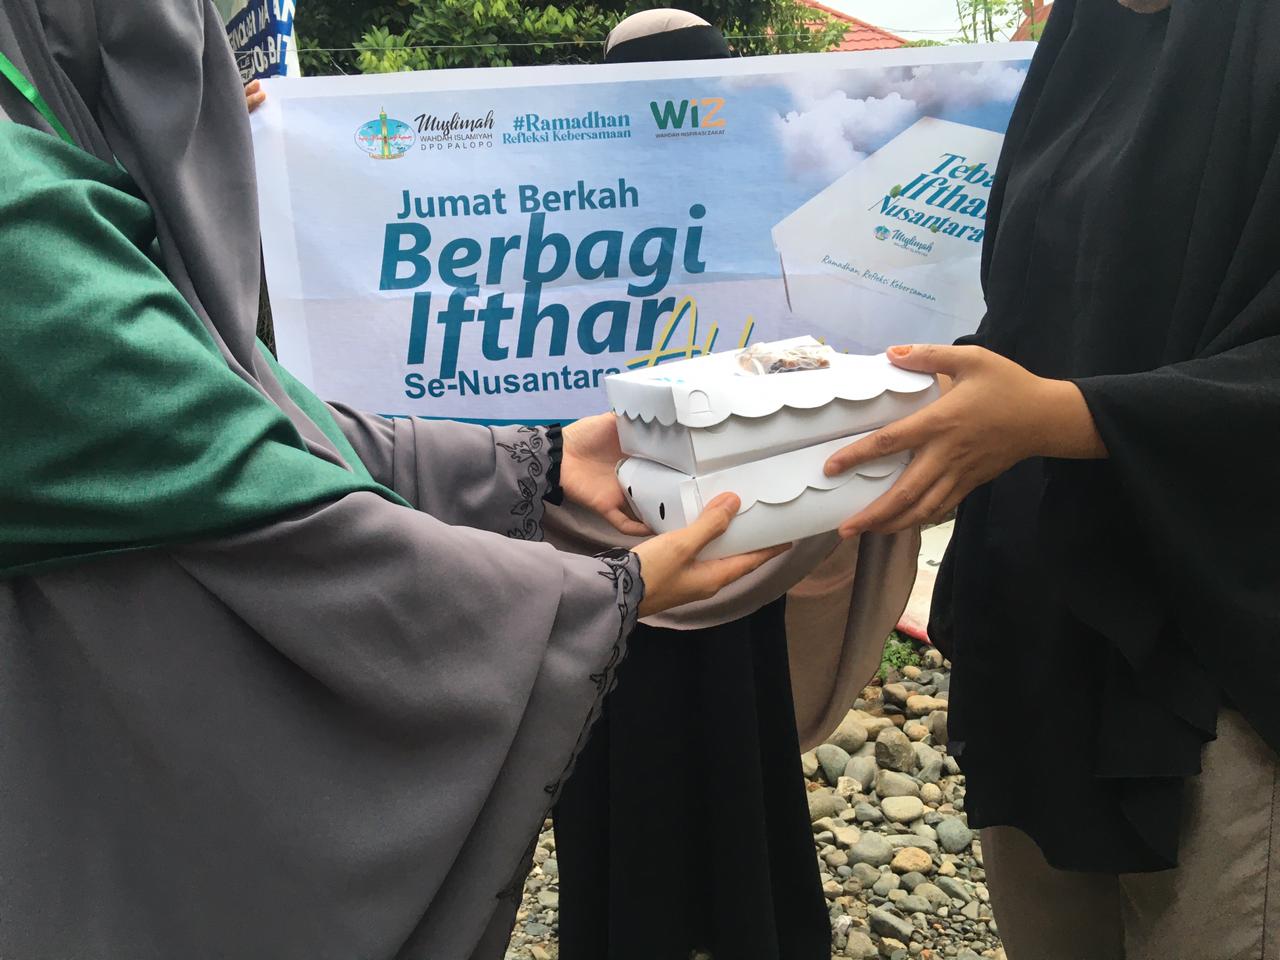 Muslimah Wahdah Palopo Tebar Ifthar  10 Kecamatan Secara Serentak